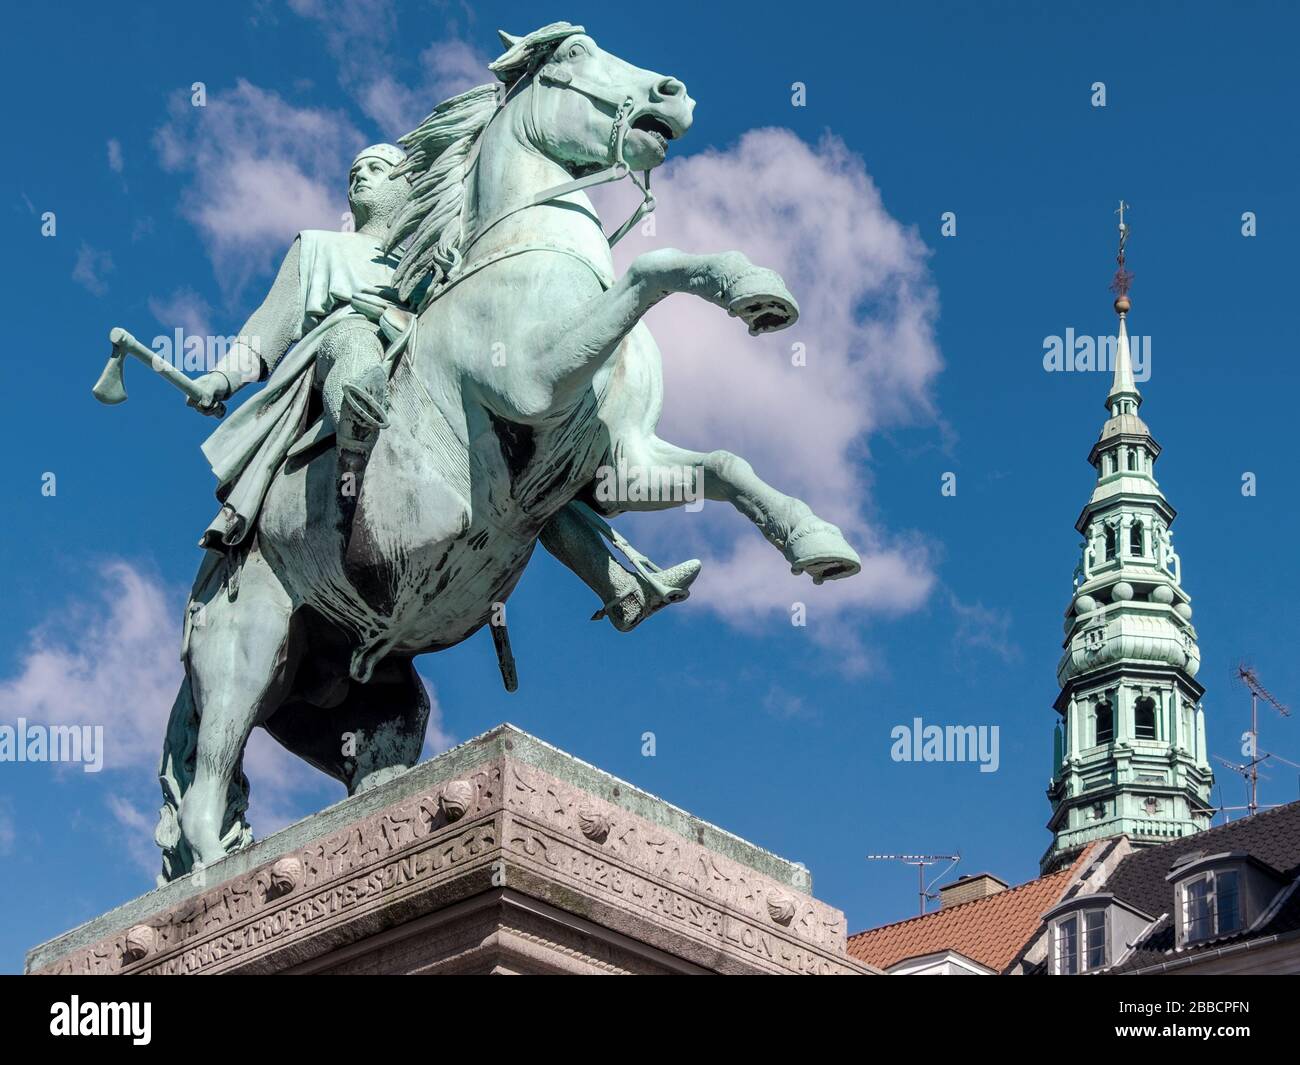 Statue d'Absalon, un chevalier guerrier et évêque qui était le fondateur de Copenhague, à cheval à Højbro Plads, Copenhague, Danemark Banque D'Images